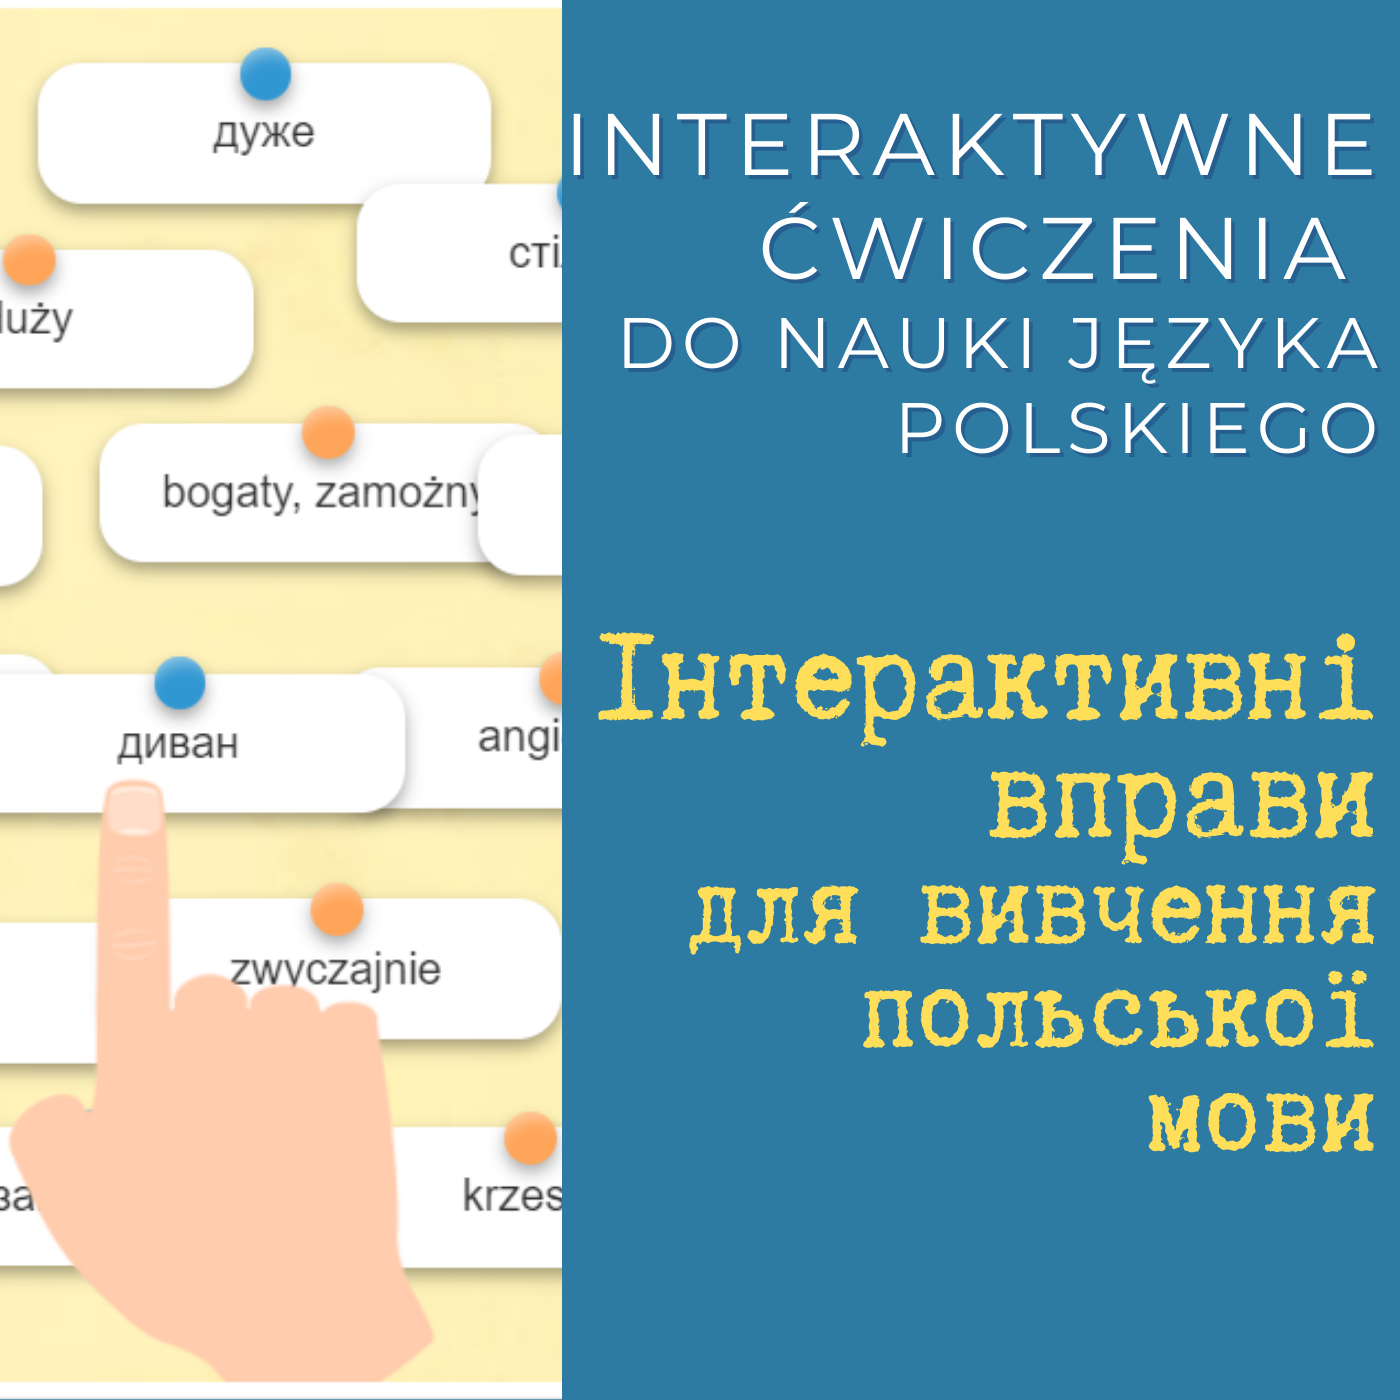 #PomagamUkrainie: Interaktywne ćwiczenia do nauki języka polskiego